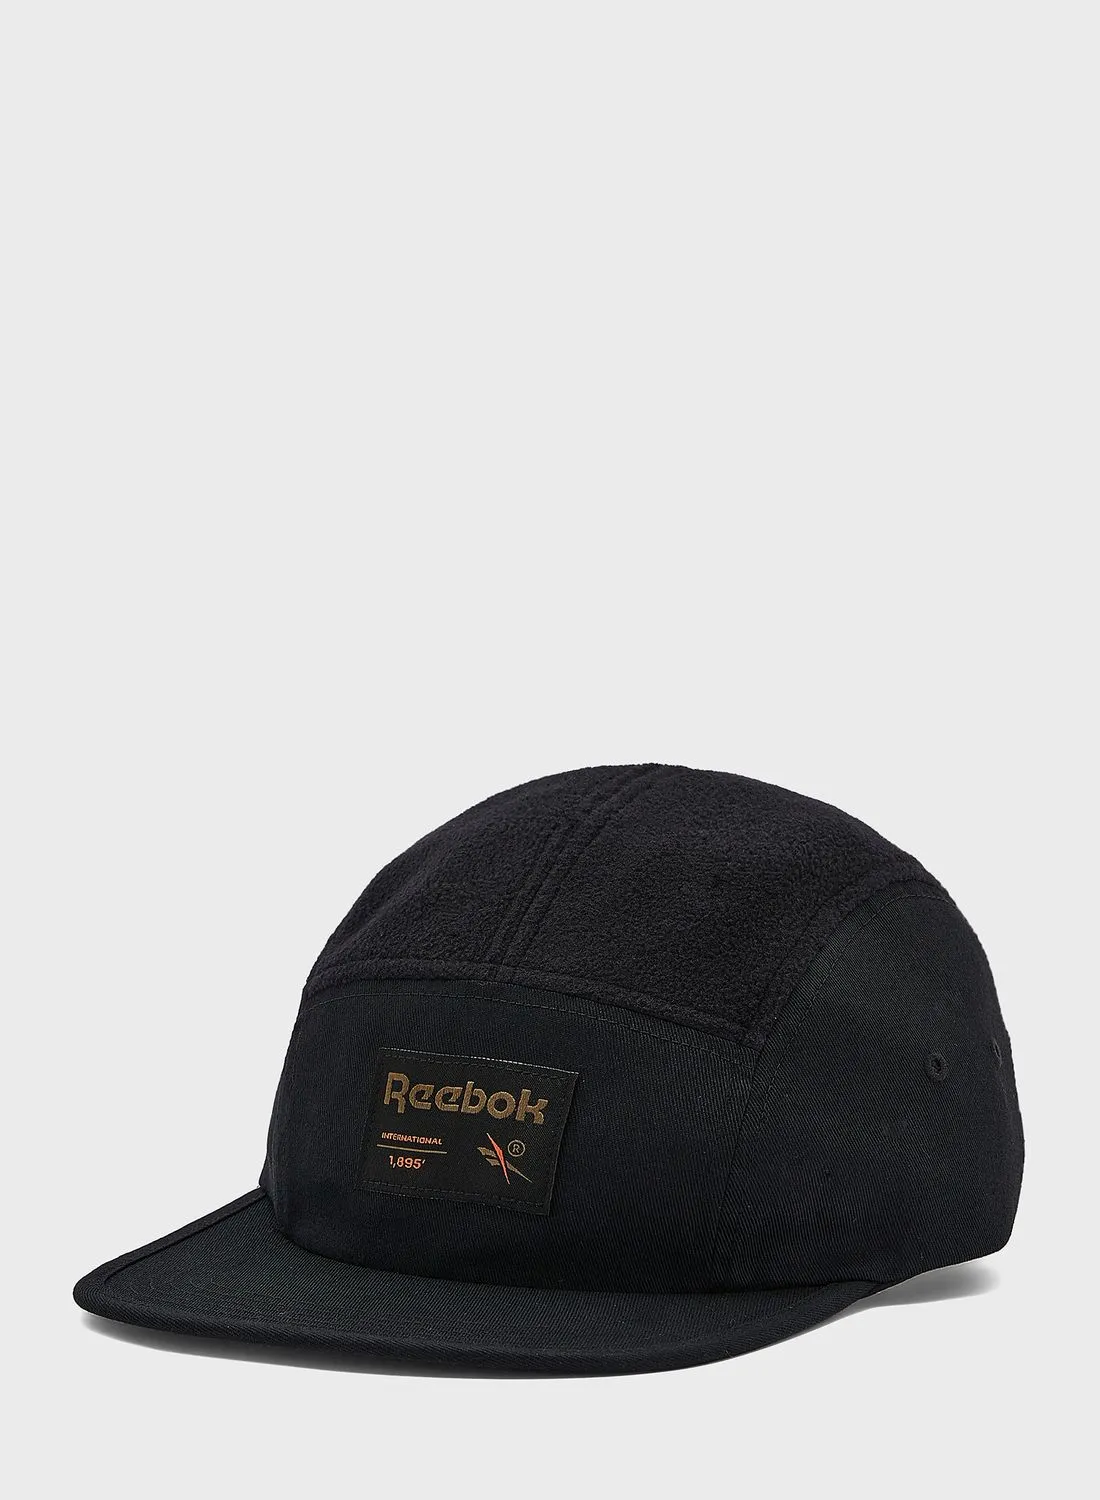 Reebok Classics Outdoor Cap